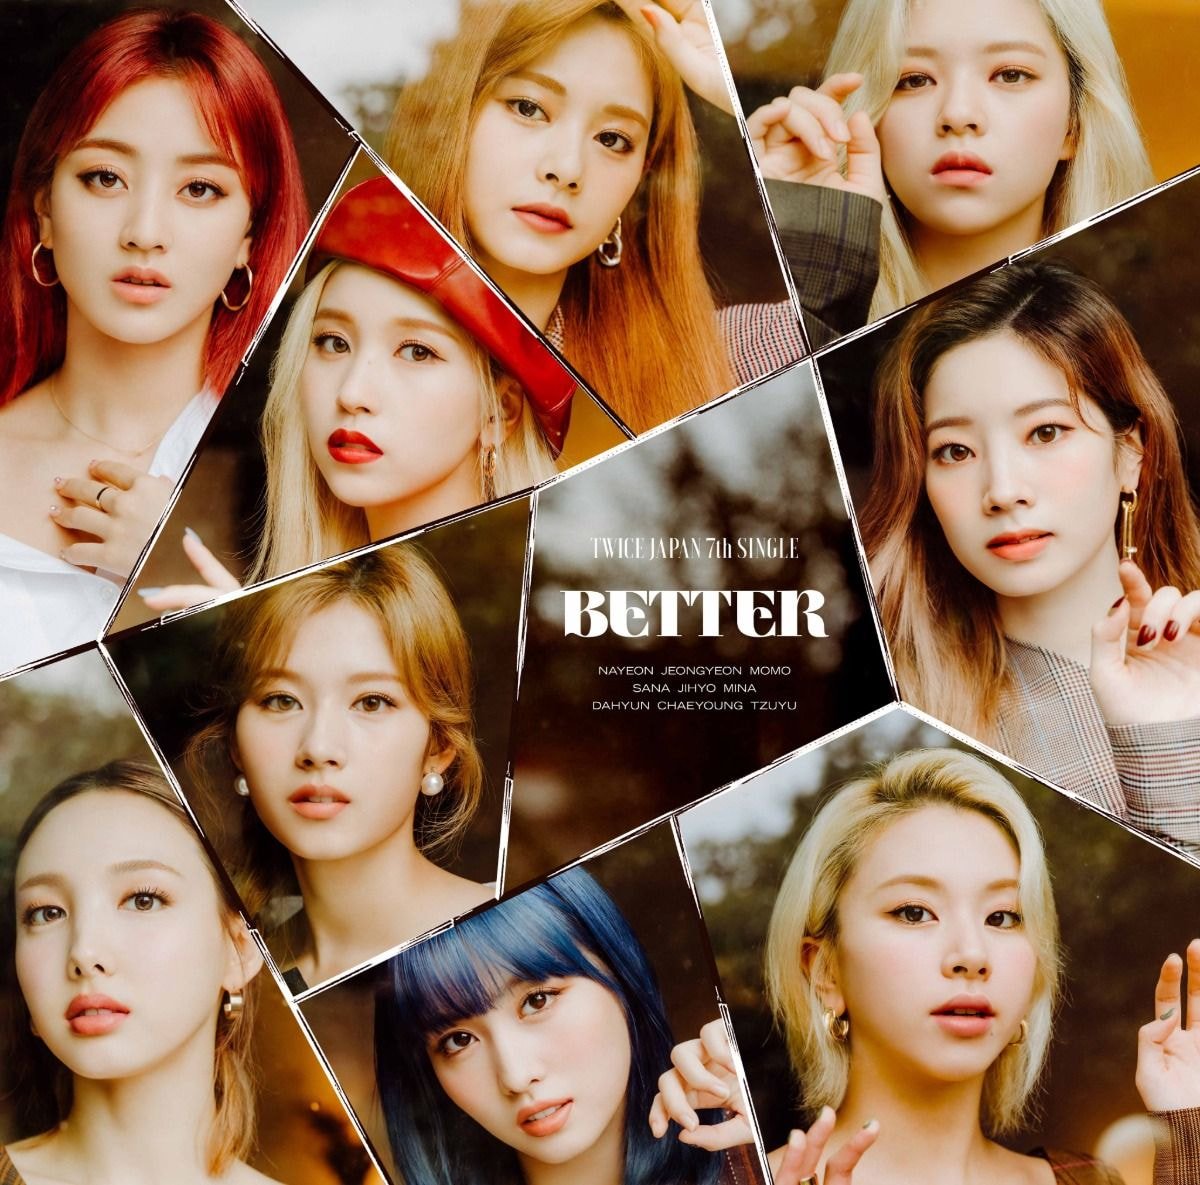 TWICE JAPAN 7th SINGLE 『BETTER』  2020.11.18 Release